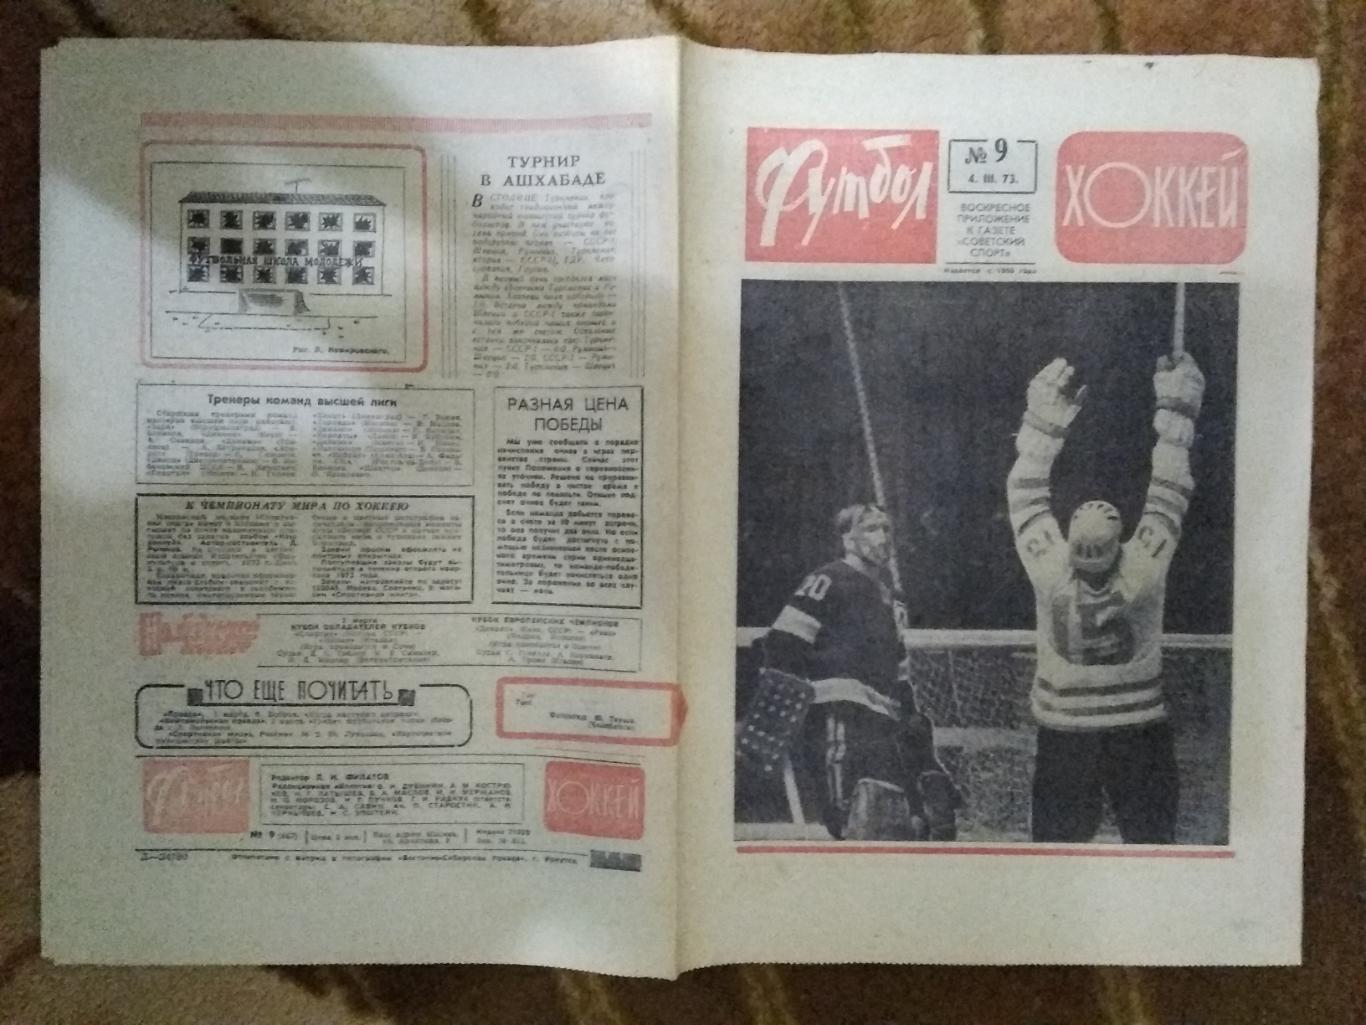 Футбол-Хоккей № 9 1973 г. (ЕК.Спартак,Динамо Киев).